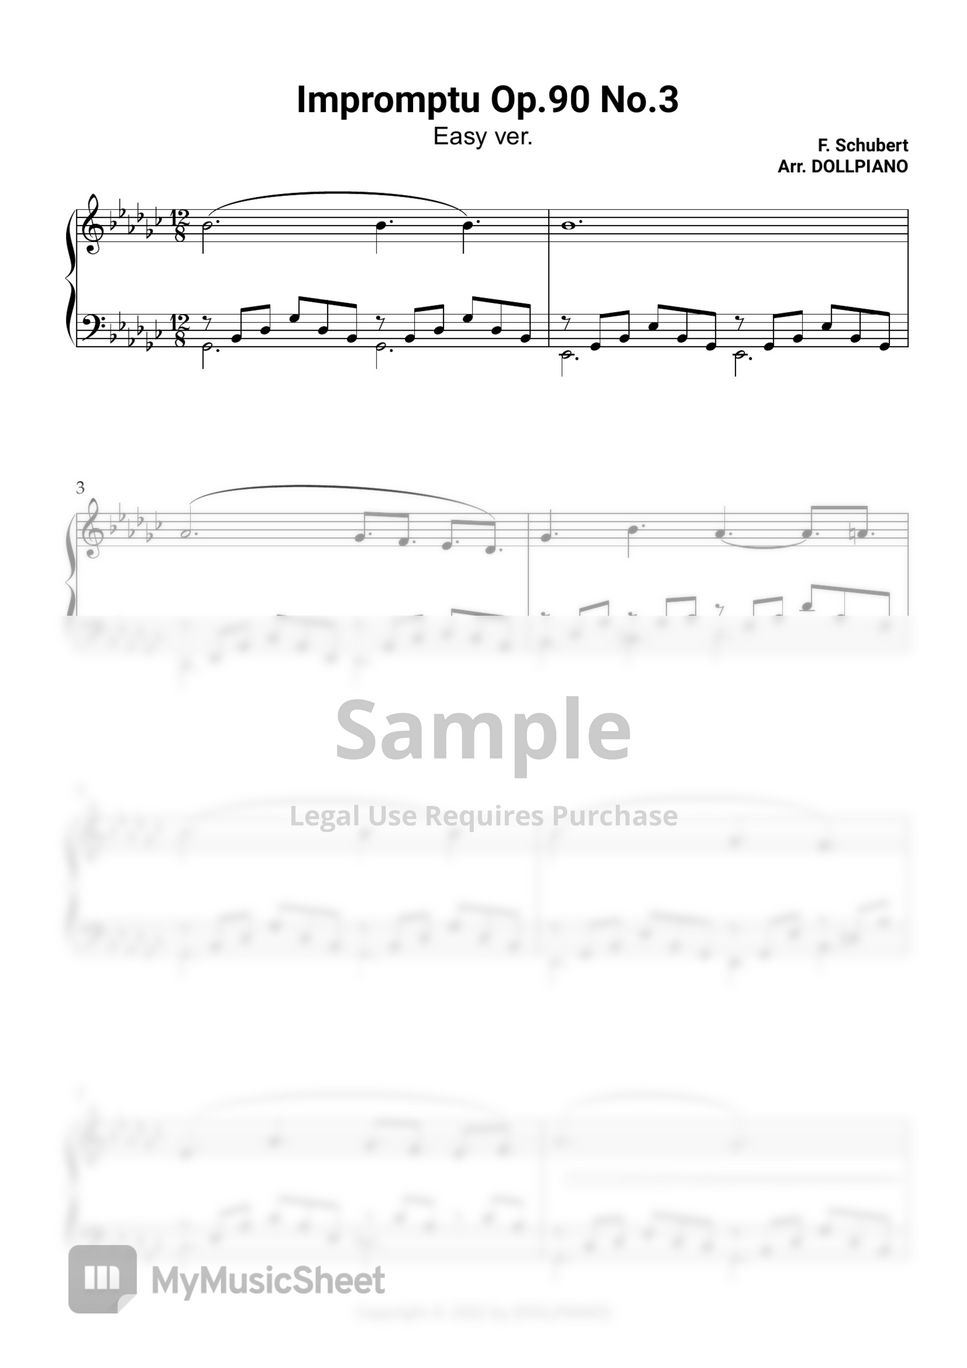 F. Schubert - impromptu Op.90 No.3 (Easy ver. G flat Major) by DOLLPIANO